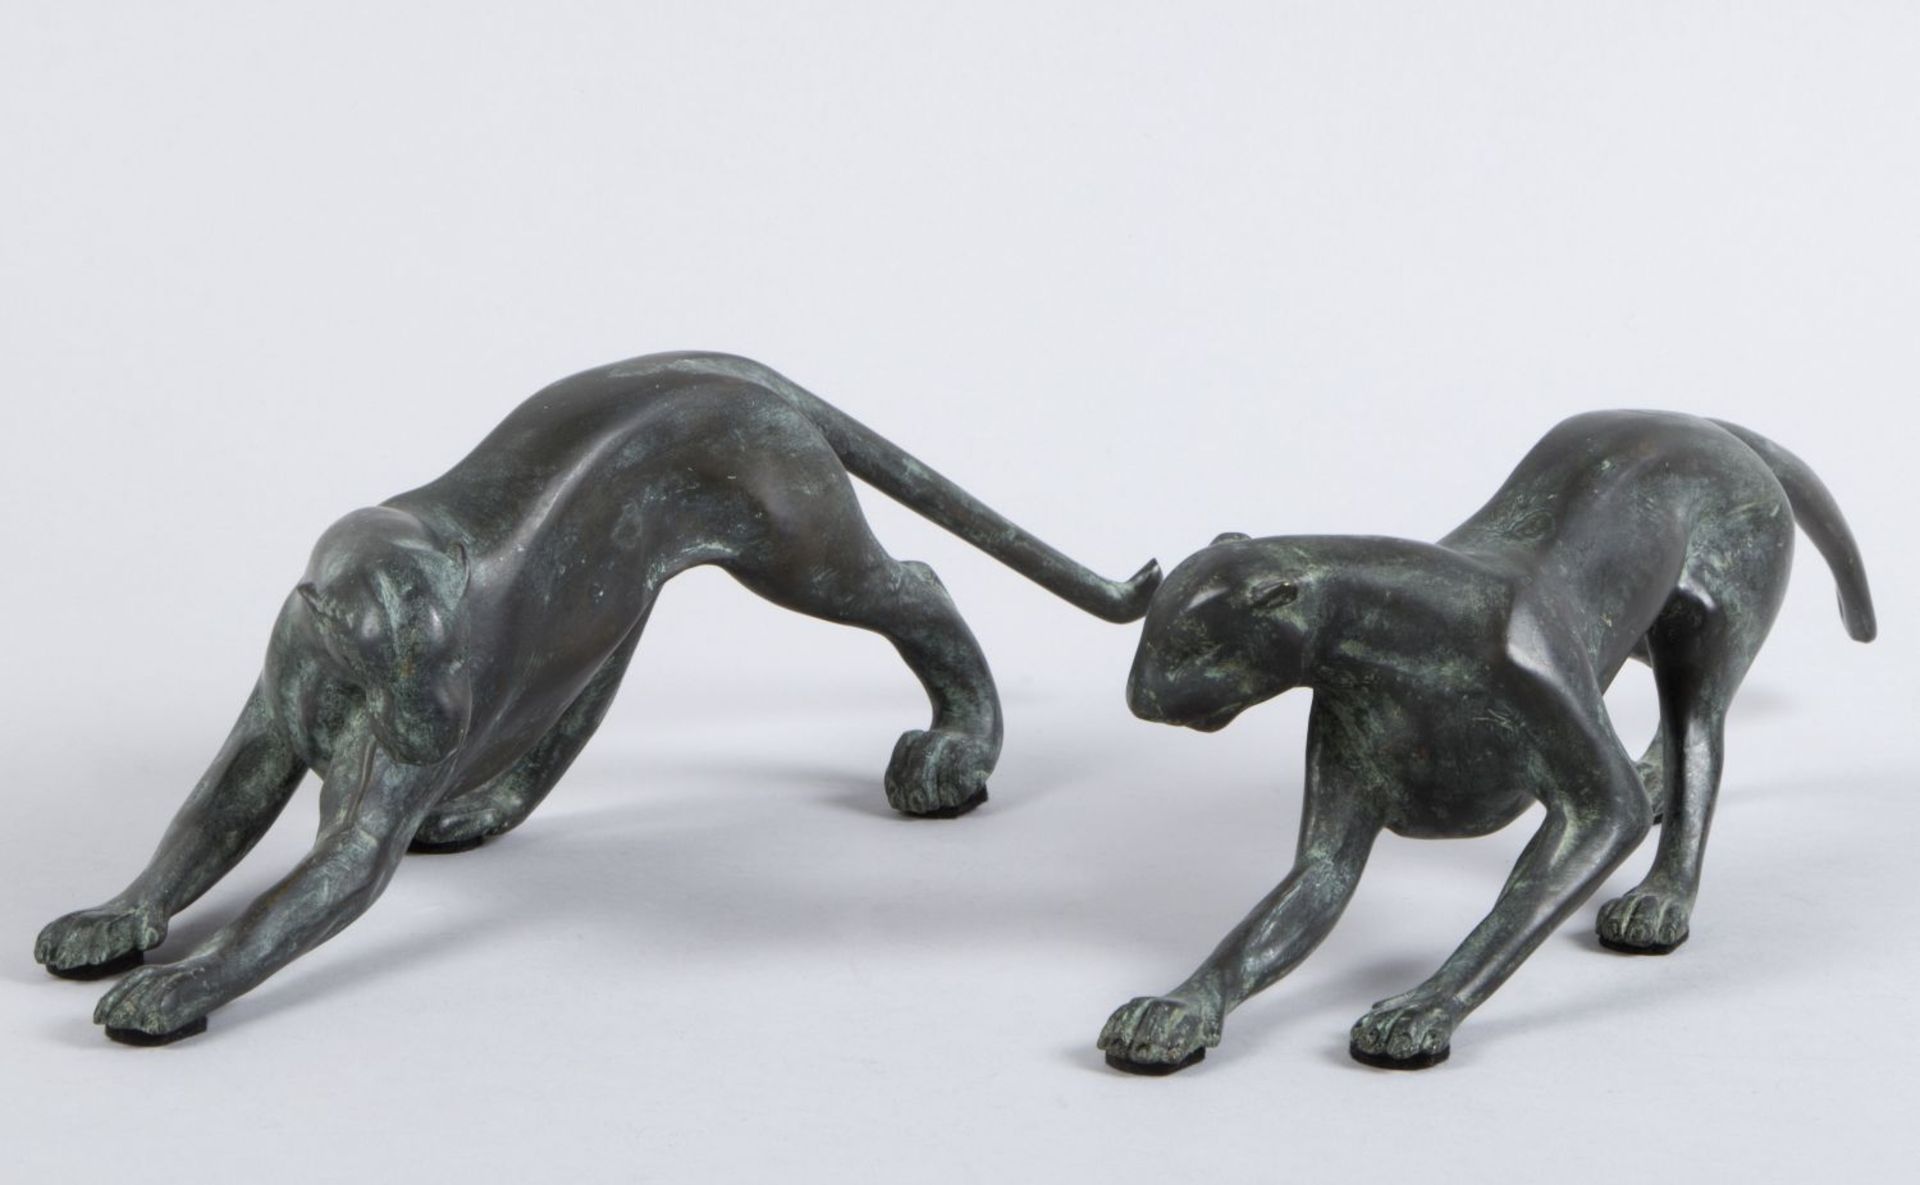 Unbekannt, 20. Jh. Zwei schreitende Panther. 2 Bronzen, schwarz-grün patiniert. L. 36 cm.